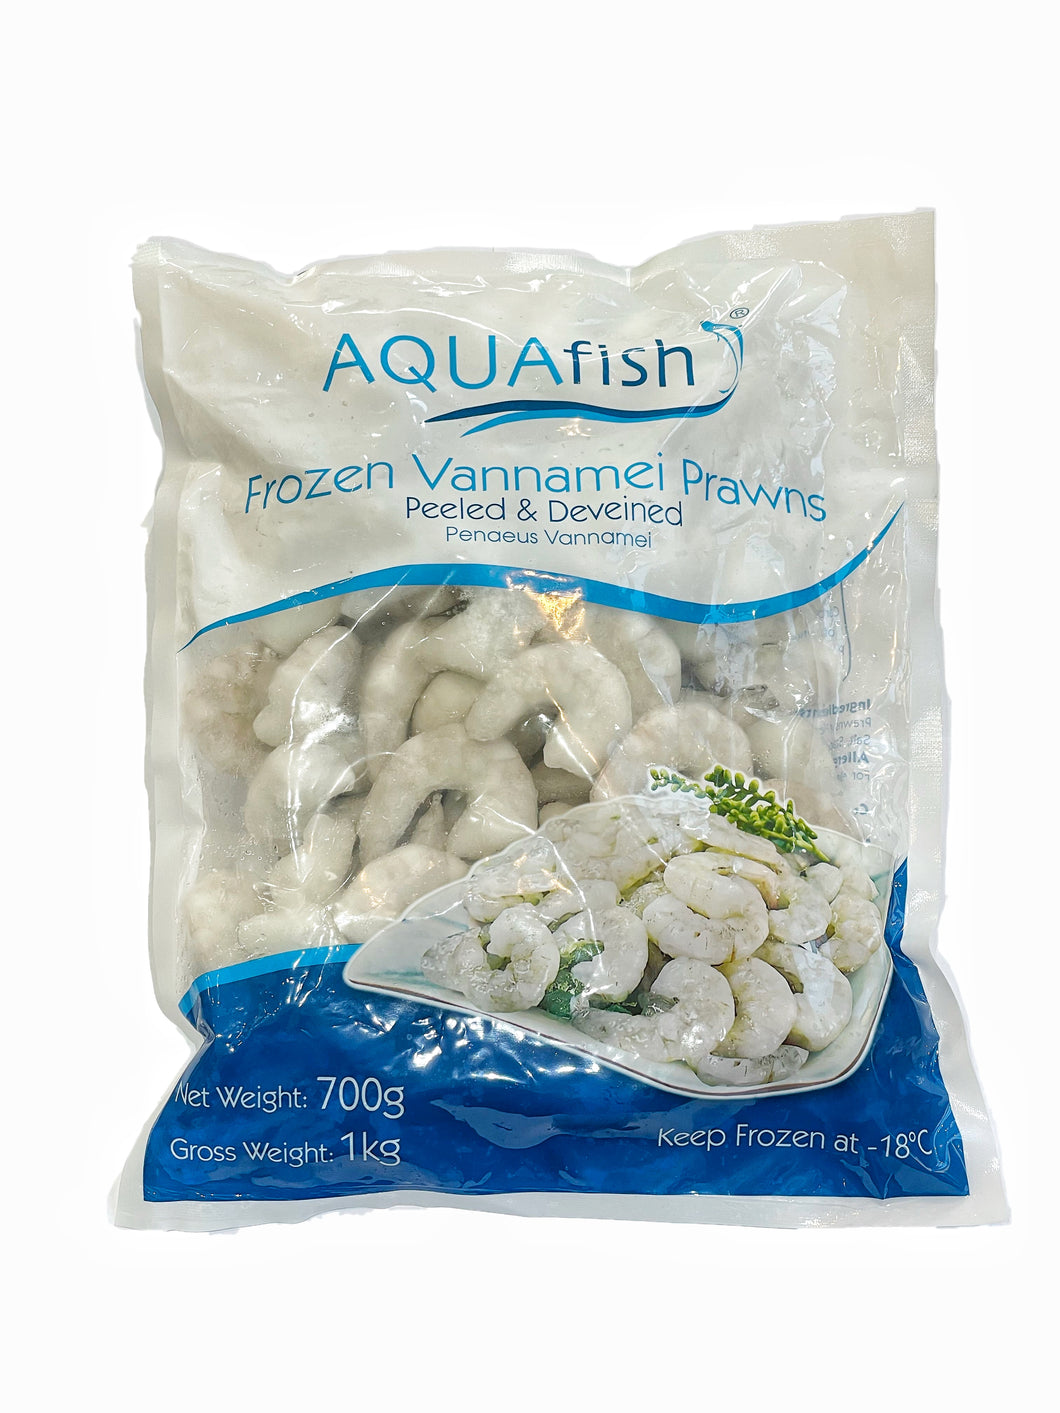 Aquafish IQF Raw P&D Vannamei Prawns (26/30, 700g net) 1kg